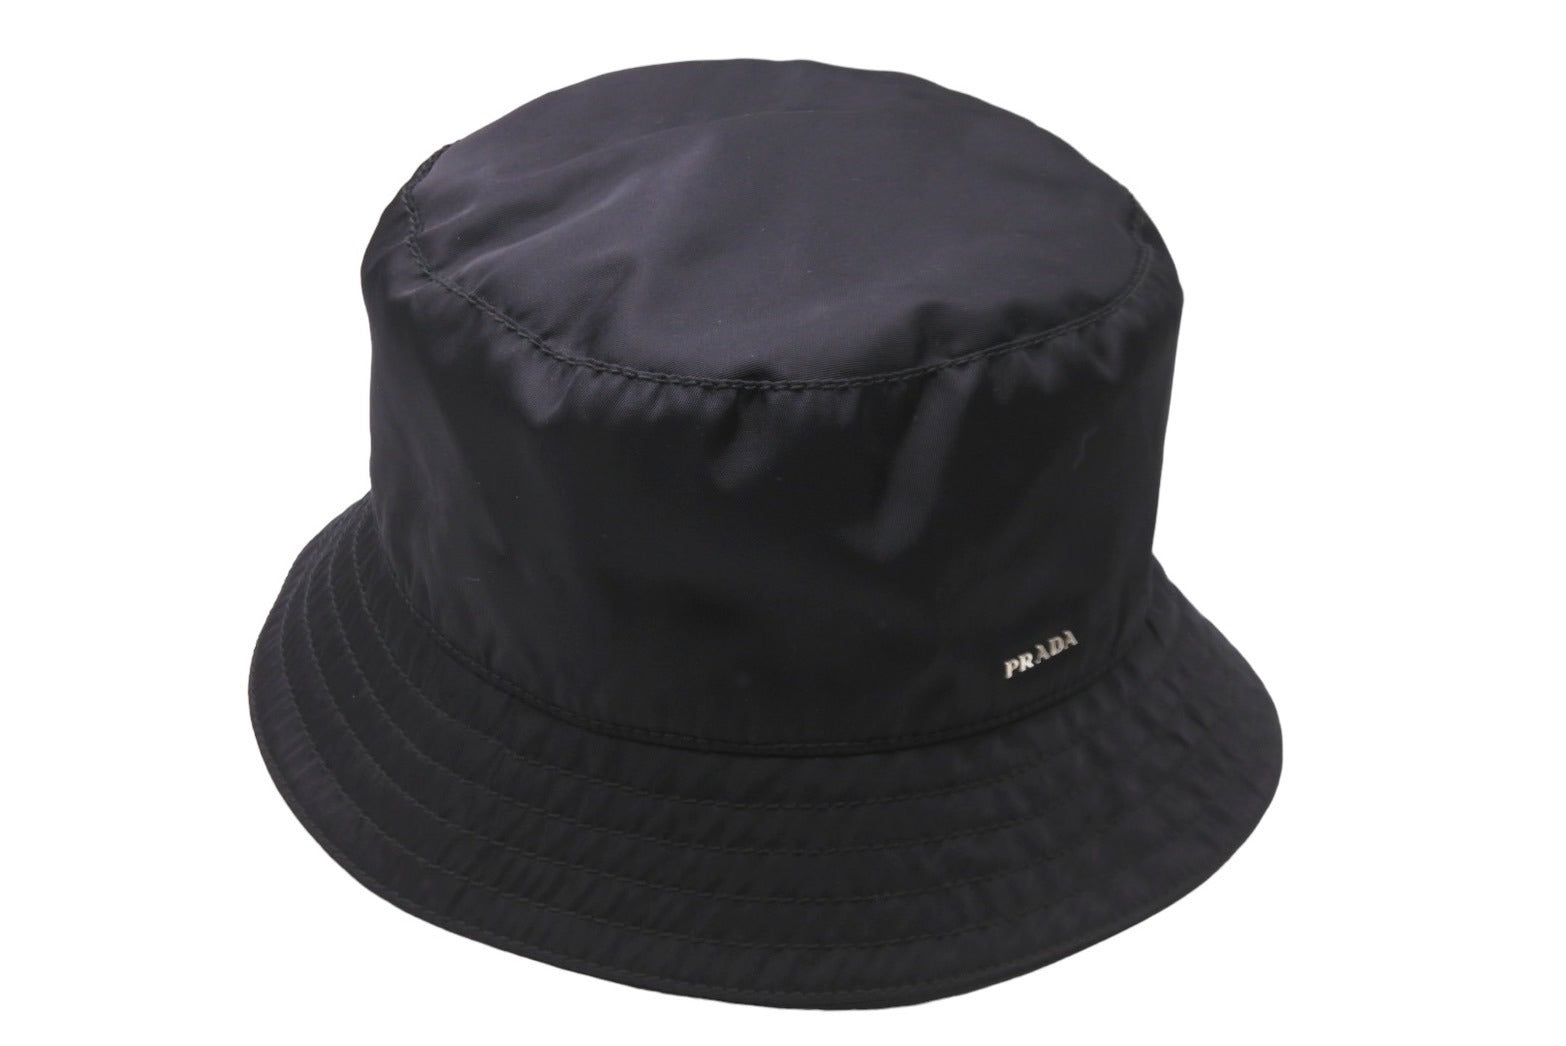 PRADA プラダ ハット 帽子 バケットハット ロゴ ブラック ポリエステル 